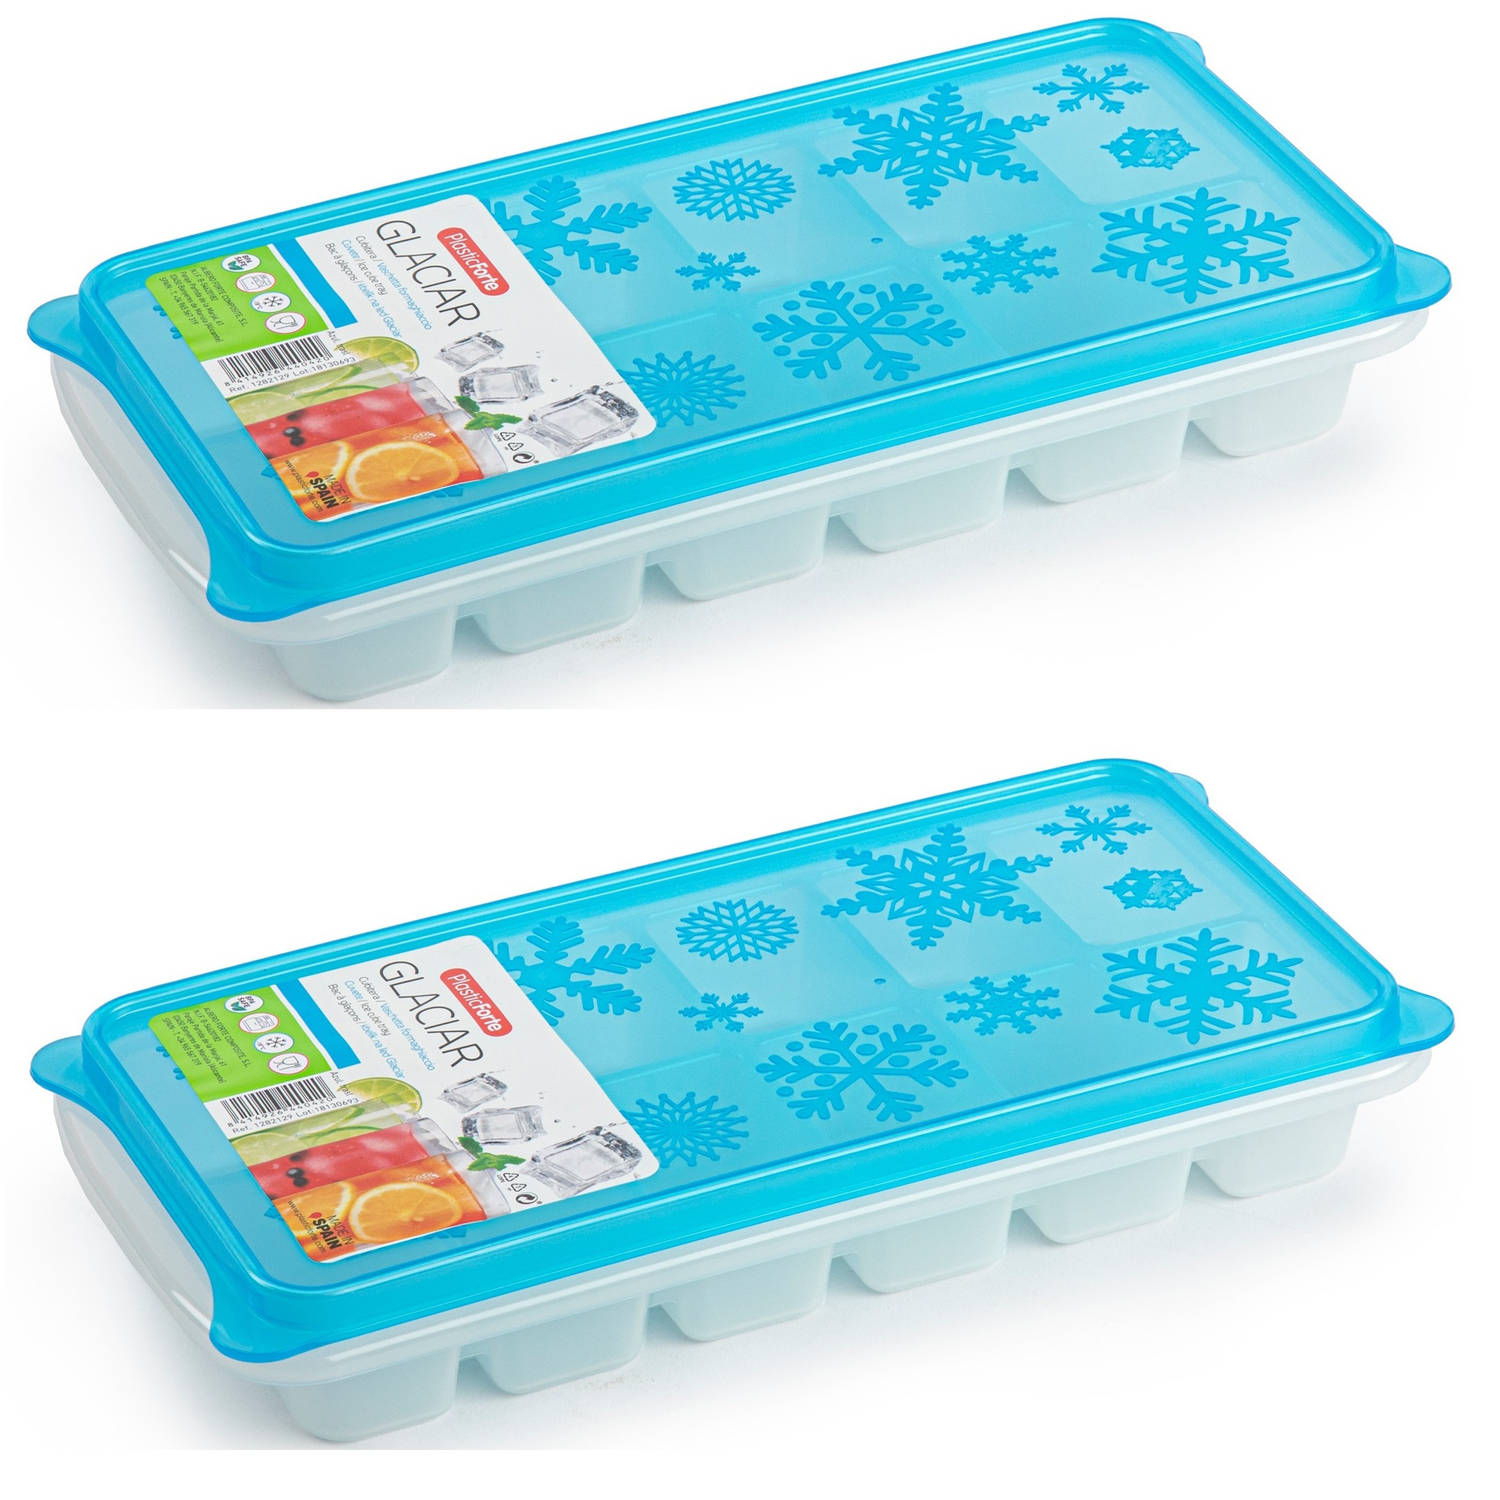 Kennis maken Rudyard Kipling functie 2x stuks Trays met ijsblokjes/ijsklontjes vormpjes 12 vakjes kunststof wit  met blauwe deksel - IJsblokjesvormen | Blokker